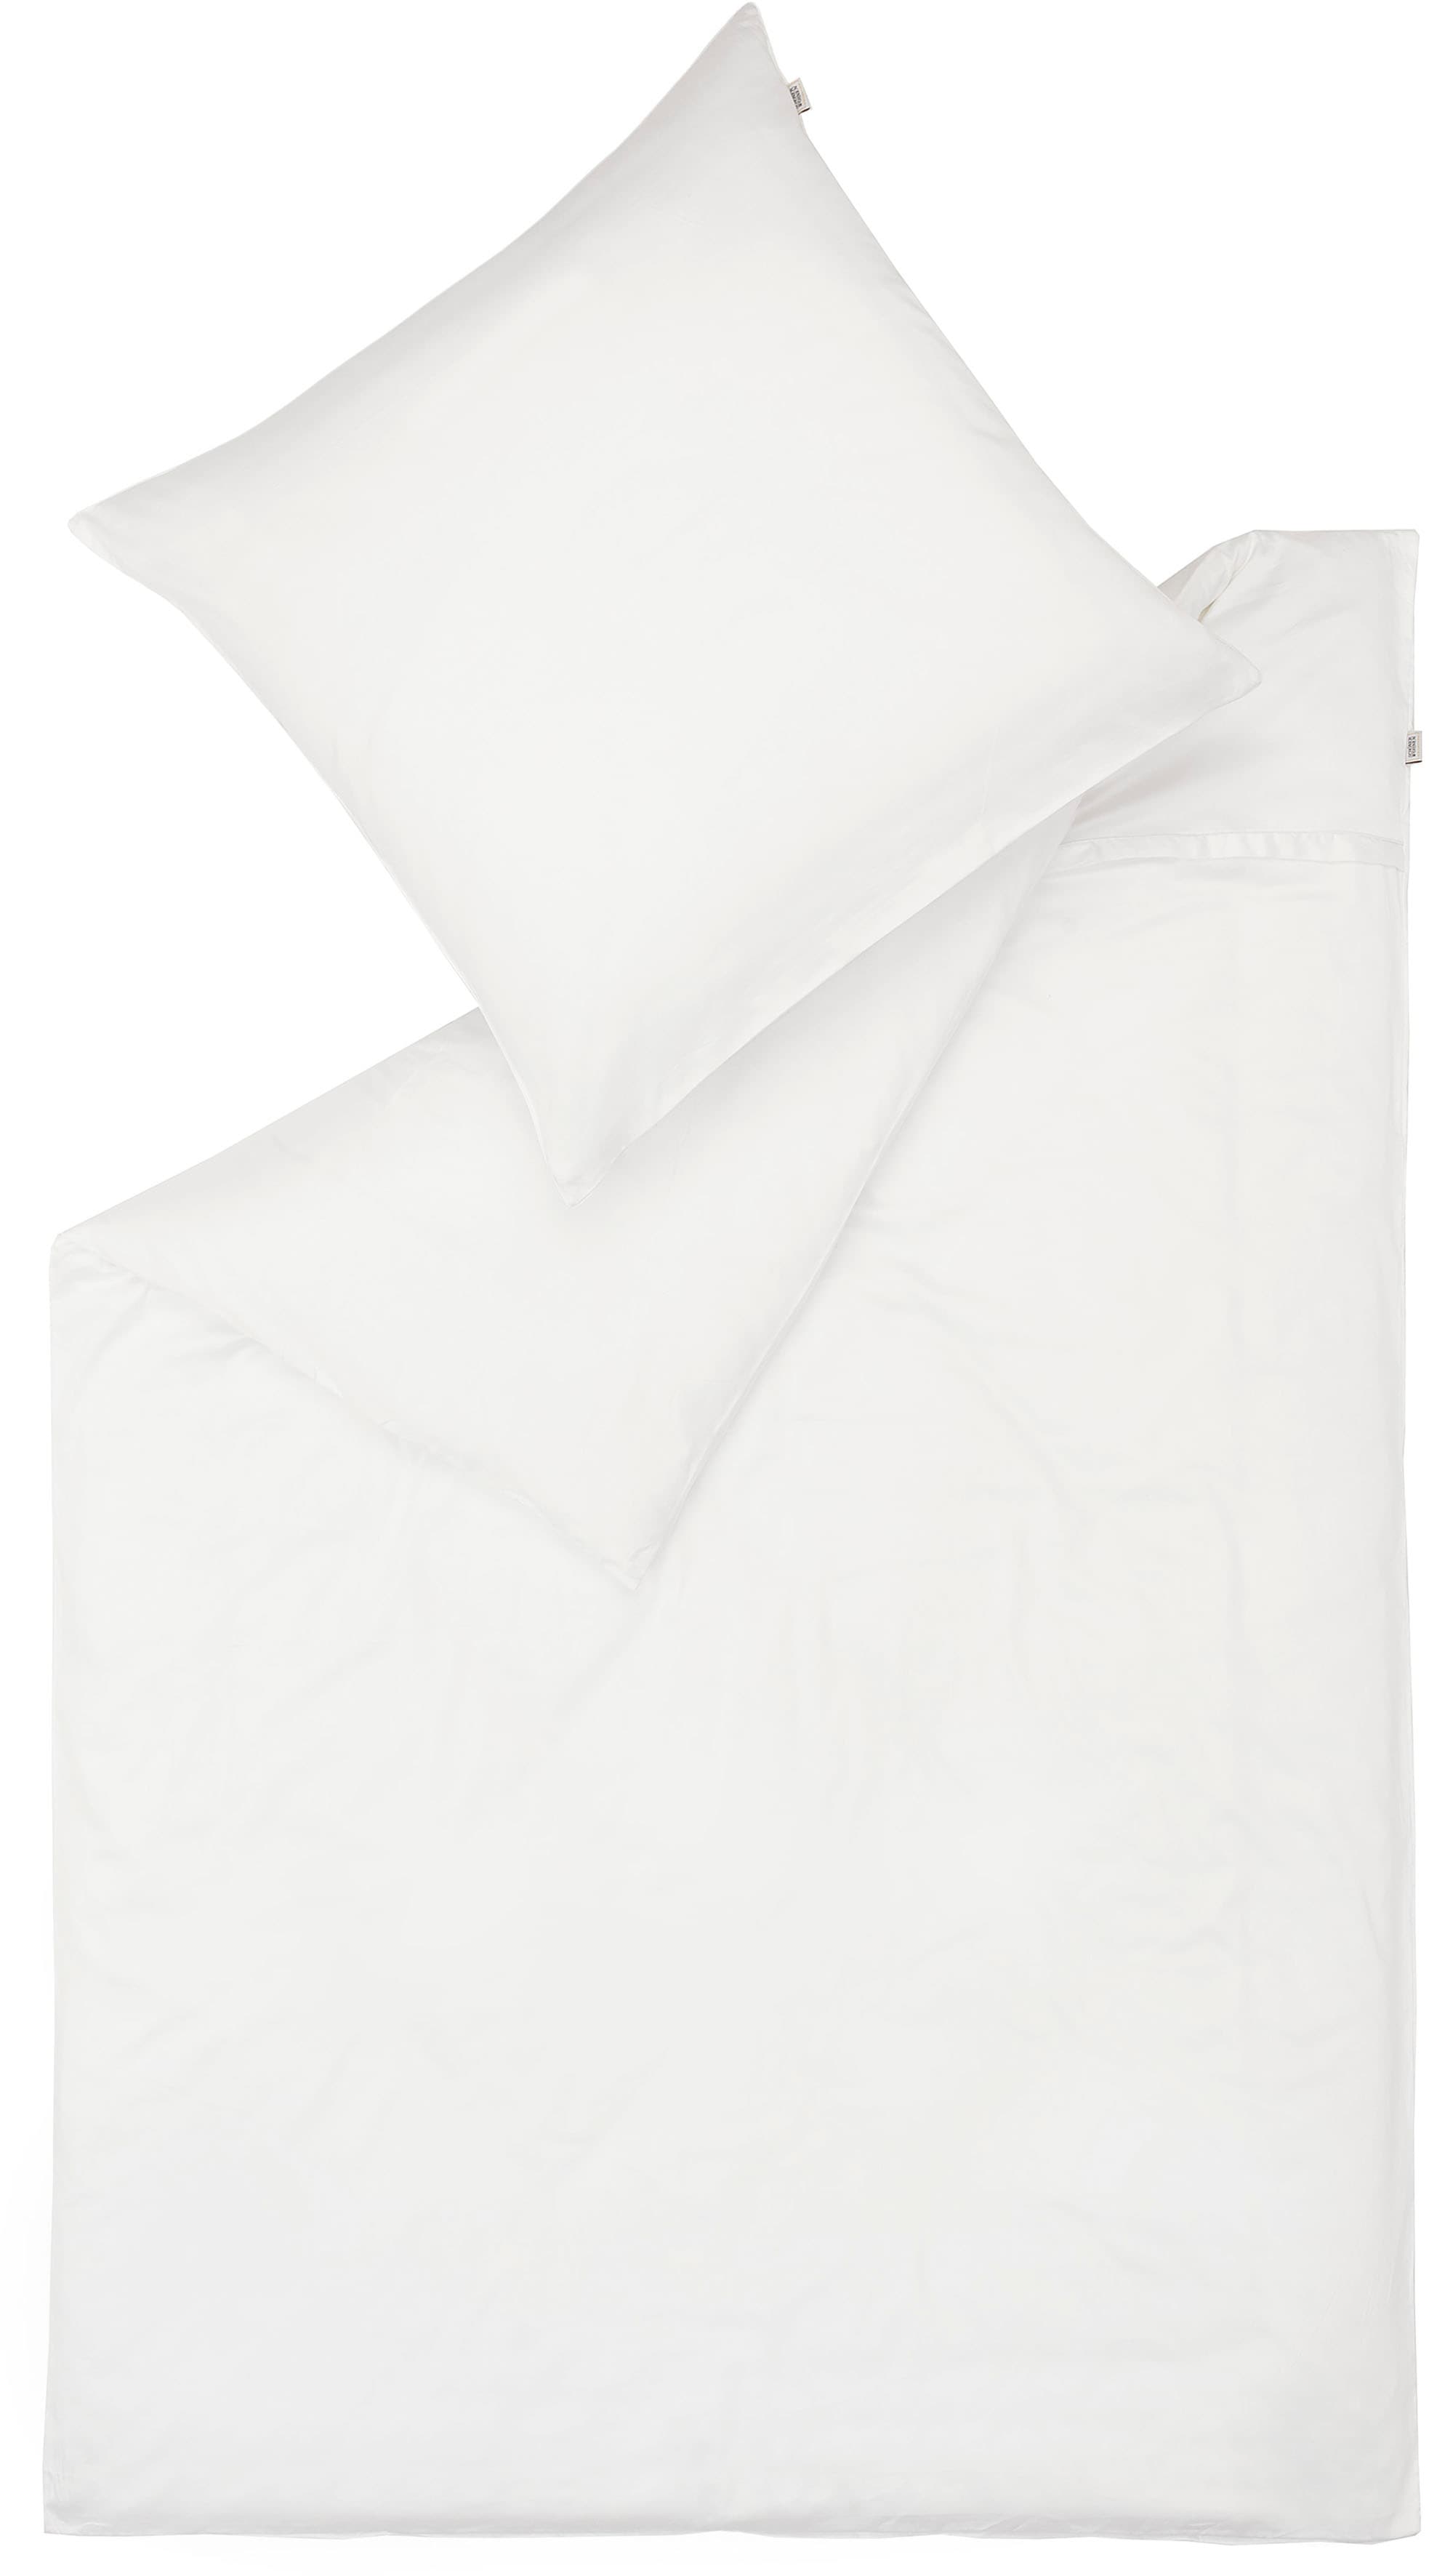 SCHÖNER WOHNEN-Kollektion Bettwäsche "Pure in Gr. 135x200, 155x220 oder 200x200 cm", (2 tlg.), Bettwäsche aus Baumwolle in Satin-Qualität, unifarbene Bettwäsche